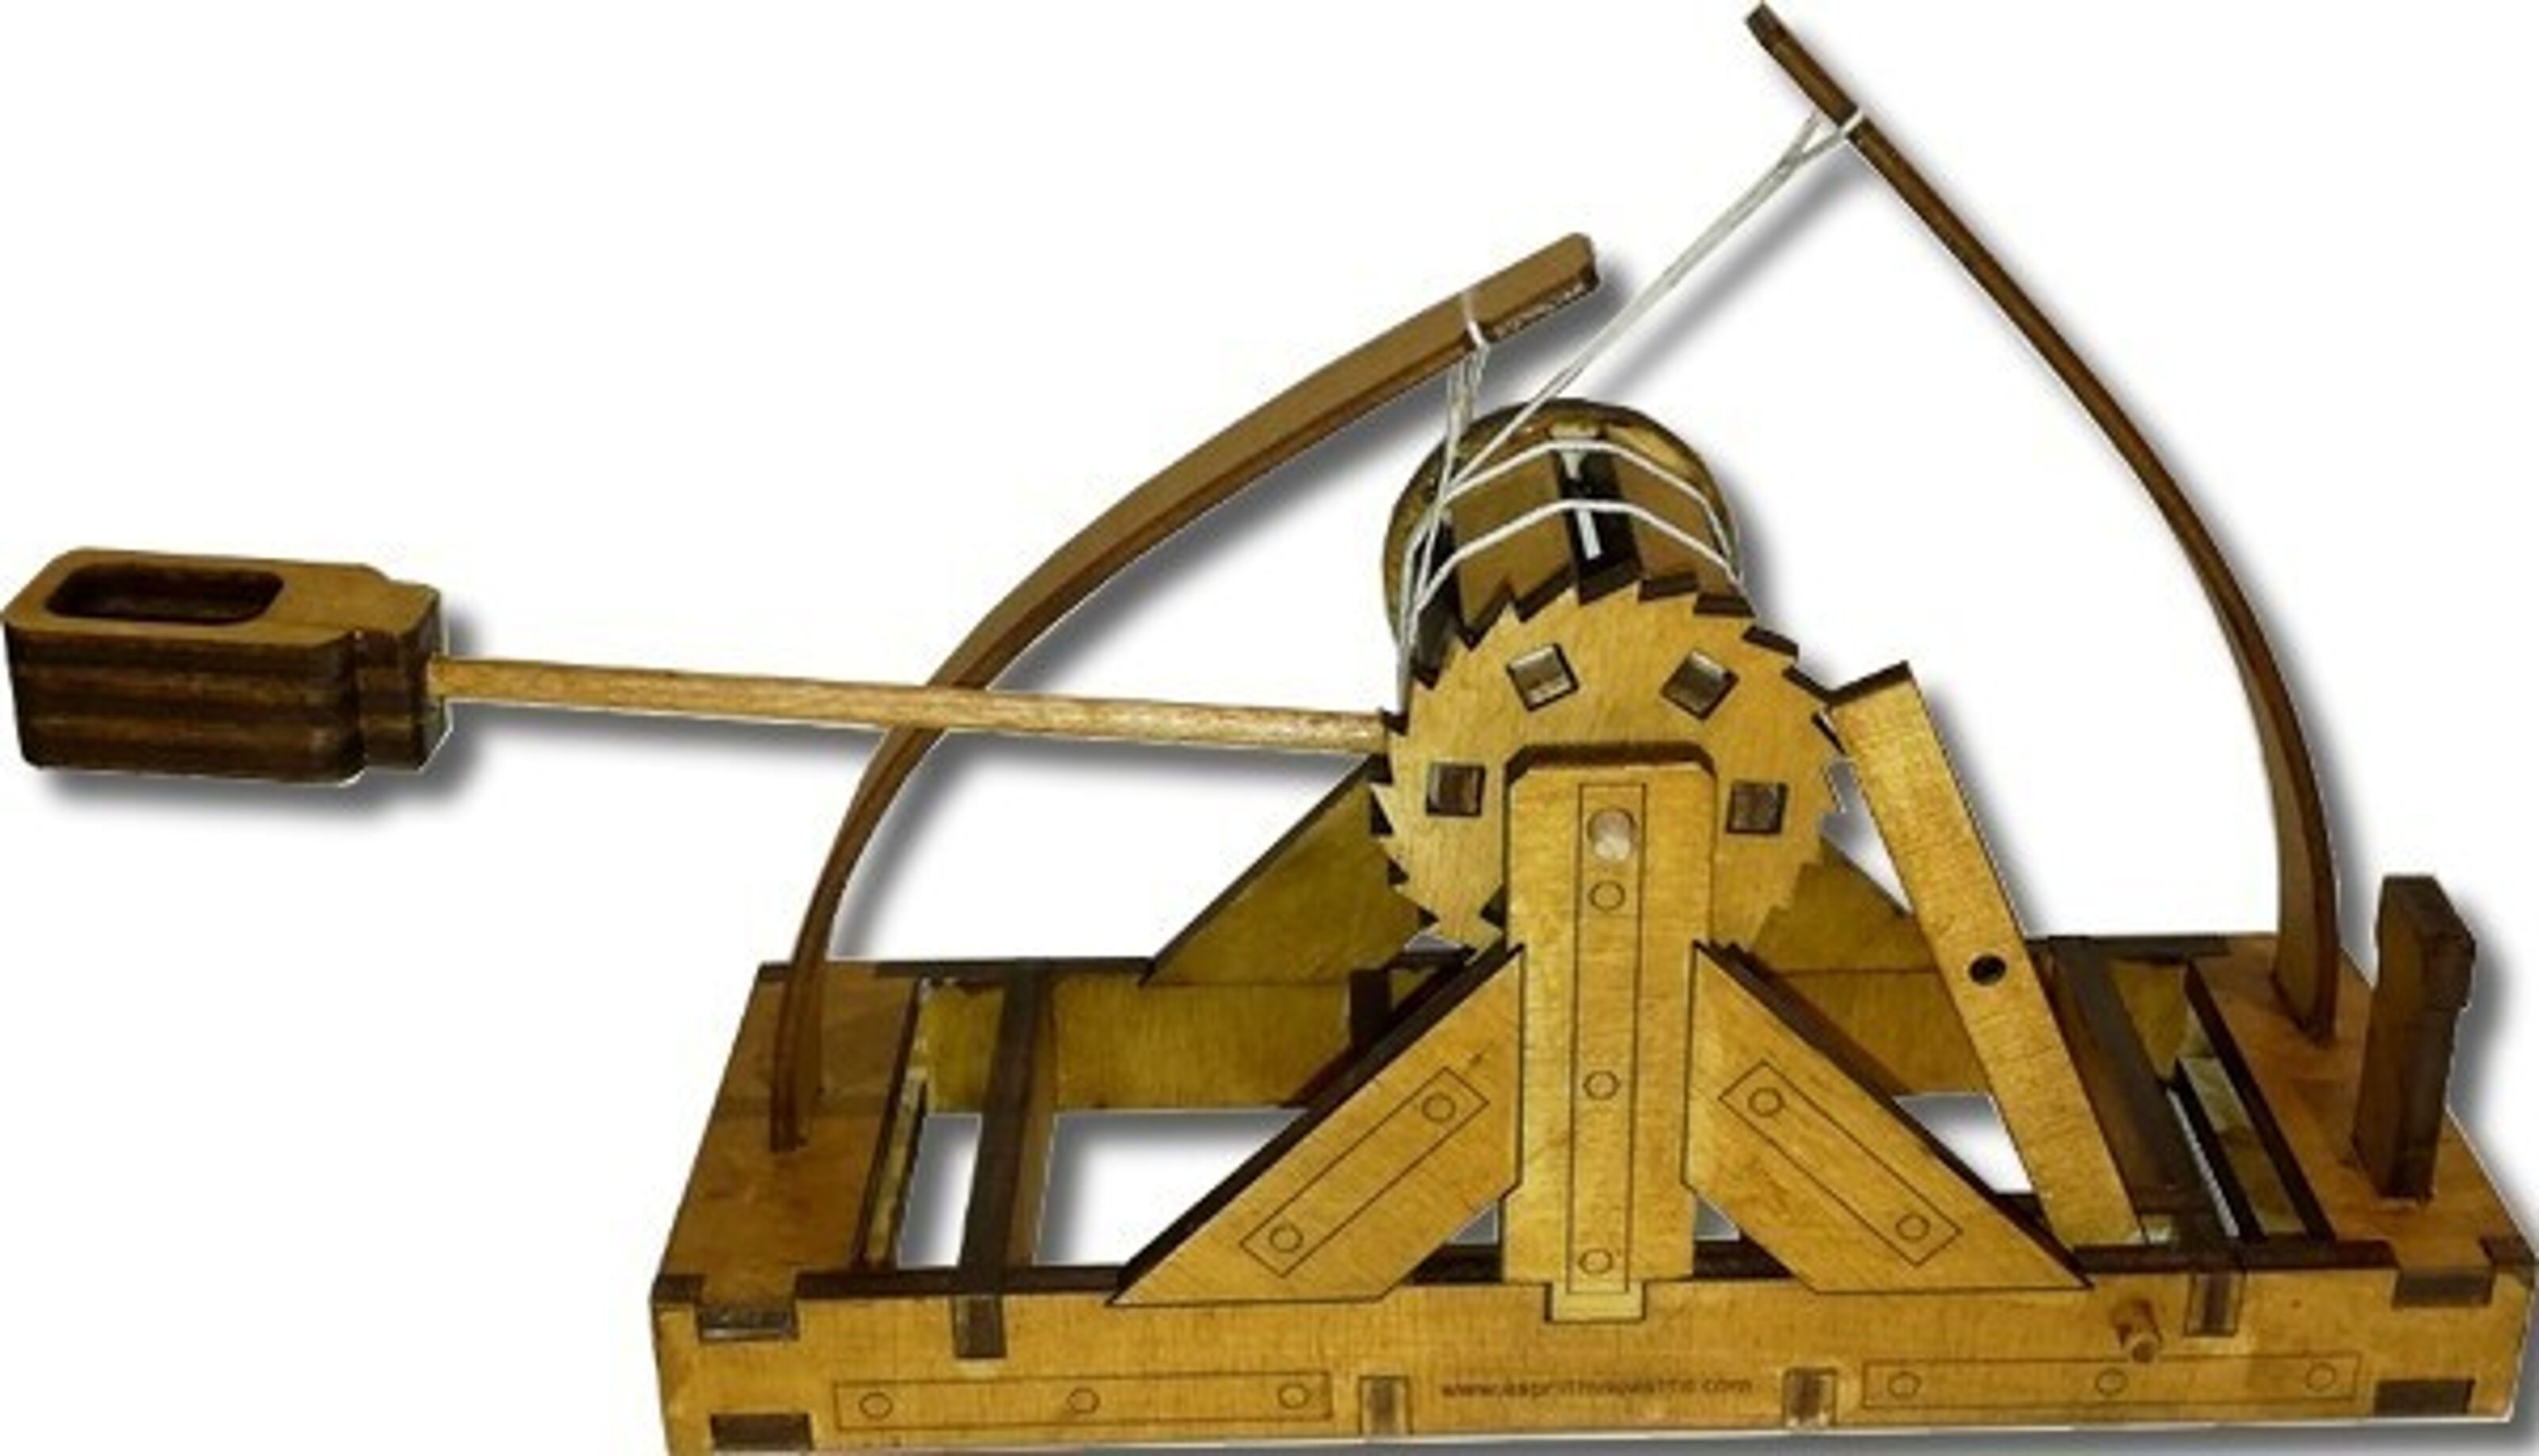 Maquette en bois : Catapulte à roues - Esprit Maquette - Rue des Maquettes